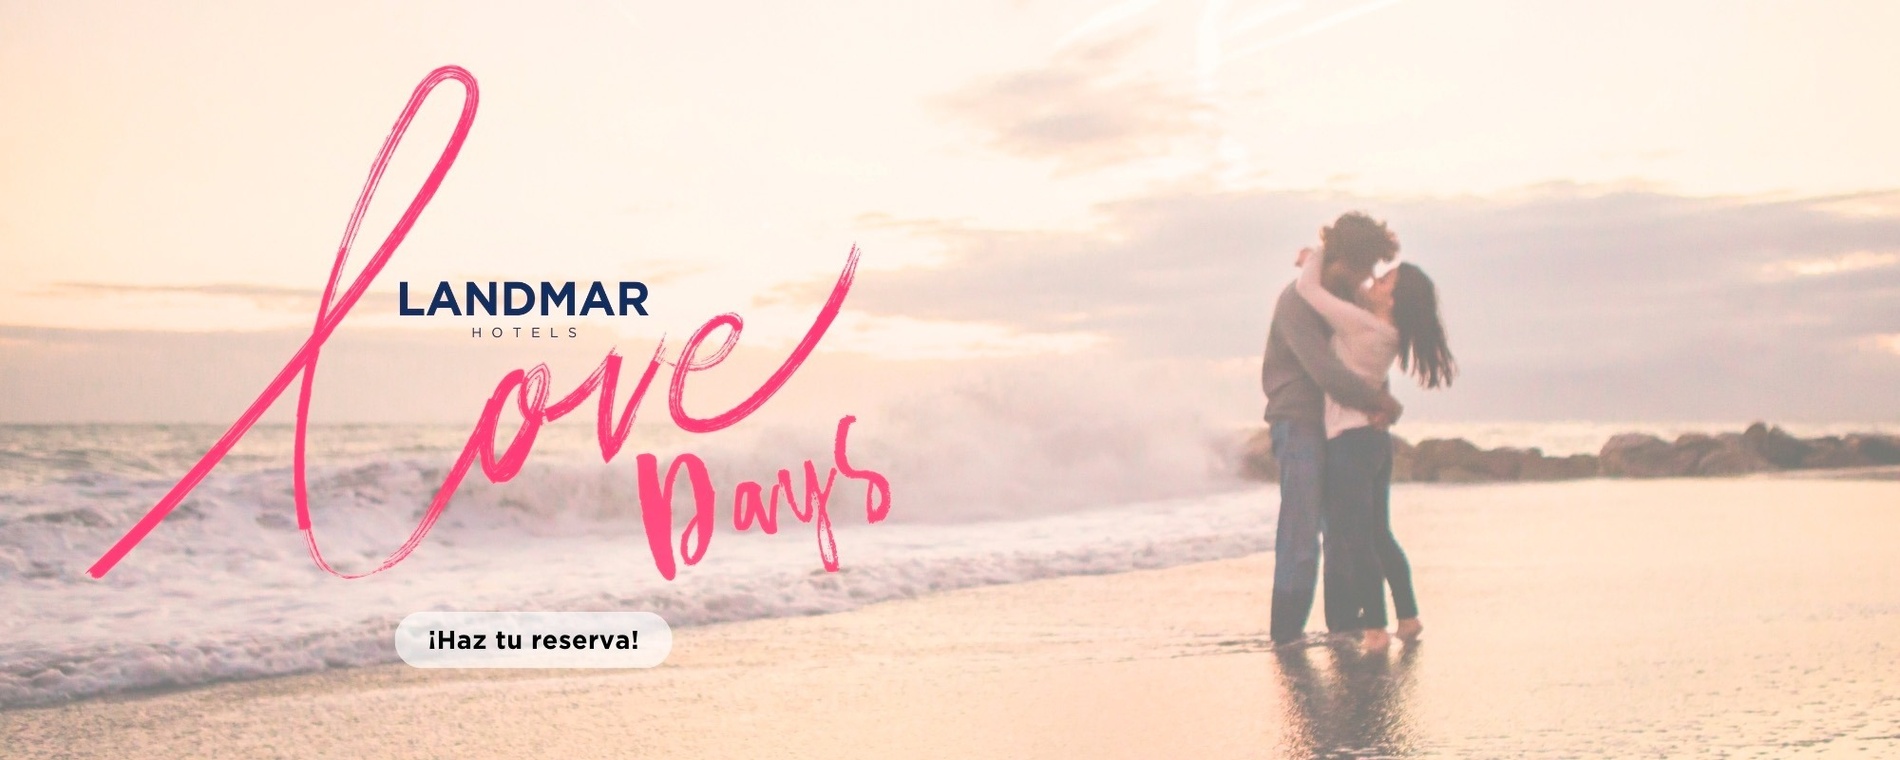 un homme tient une femme dans ses bras sur la plage avec le slogan landmar love days